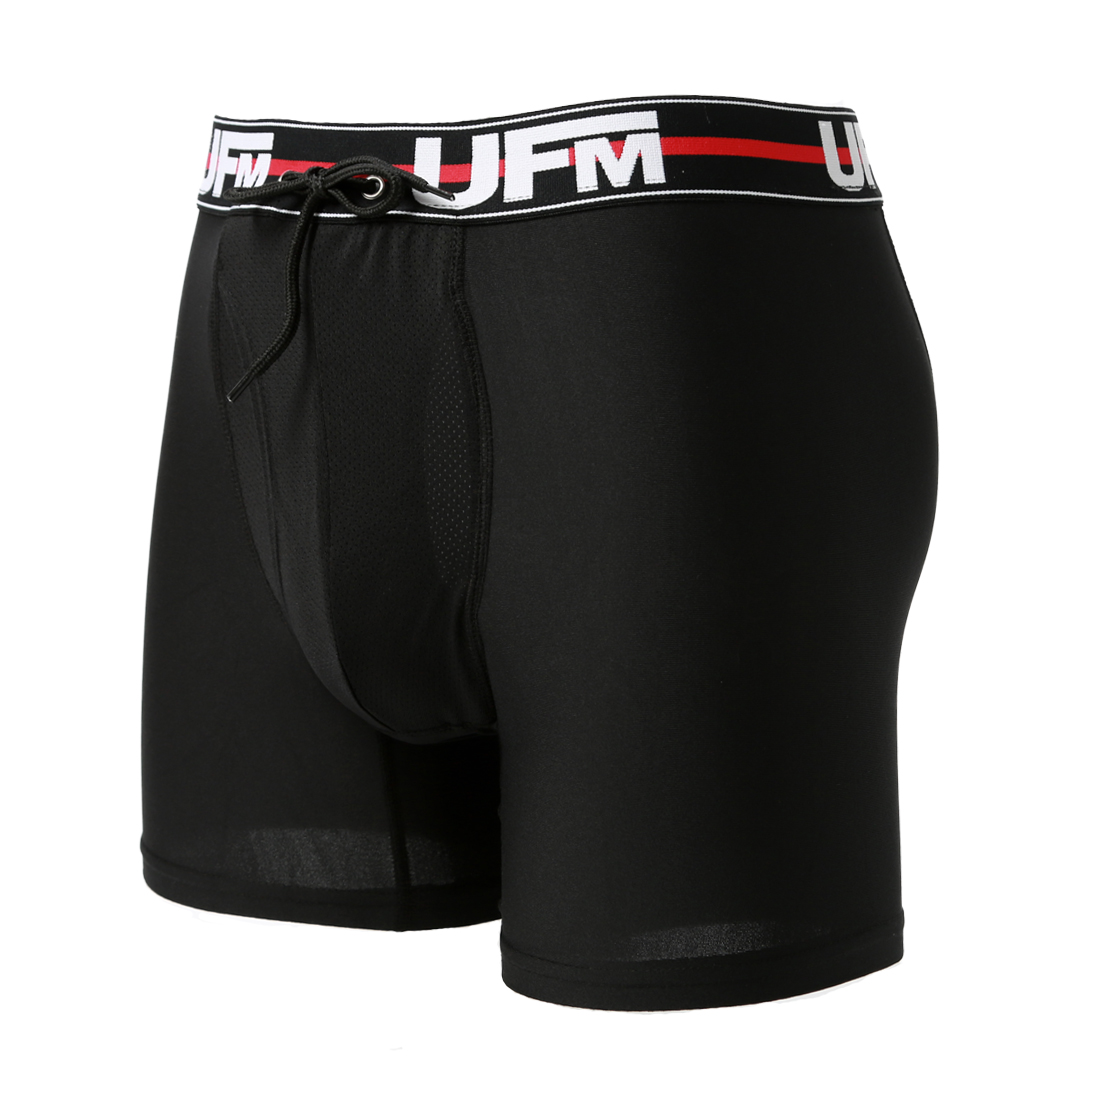 Parent UFM Underwear for Men Sport Polyester 6 inch Original Max Boxer Brief Black 800